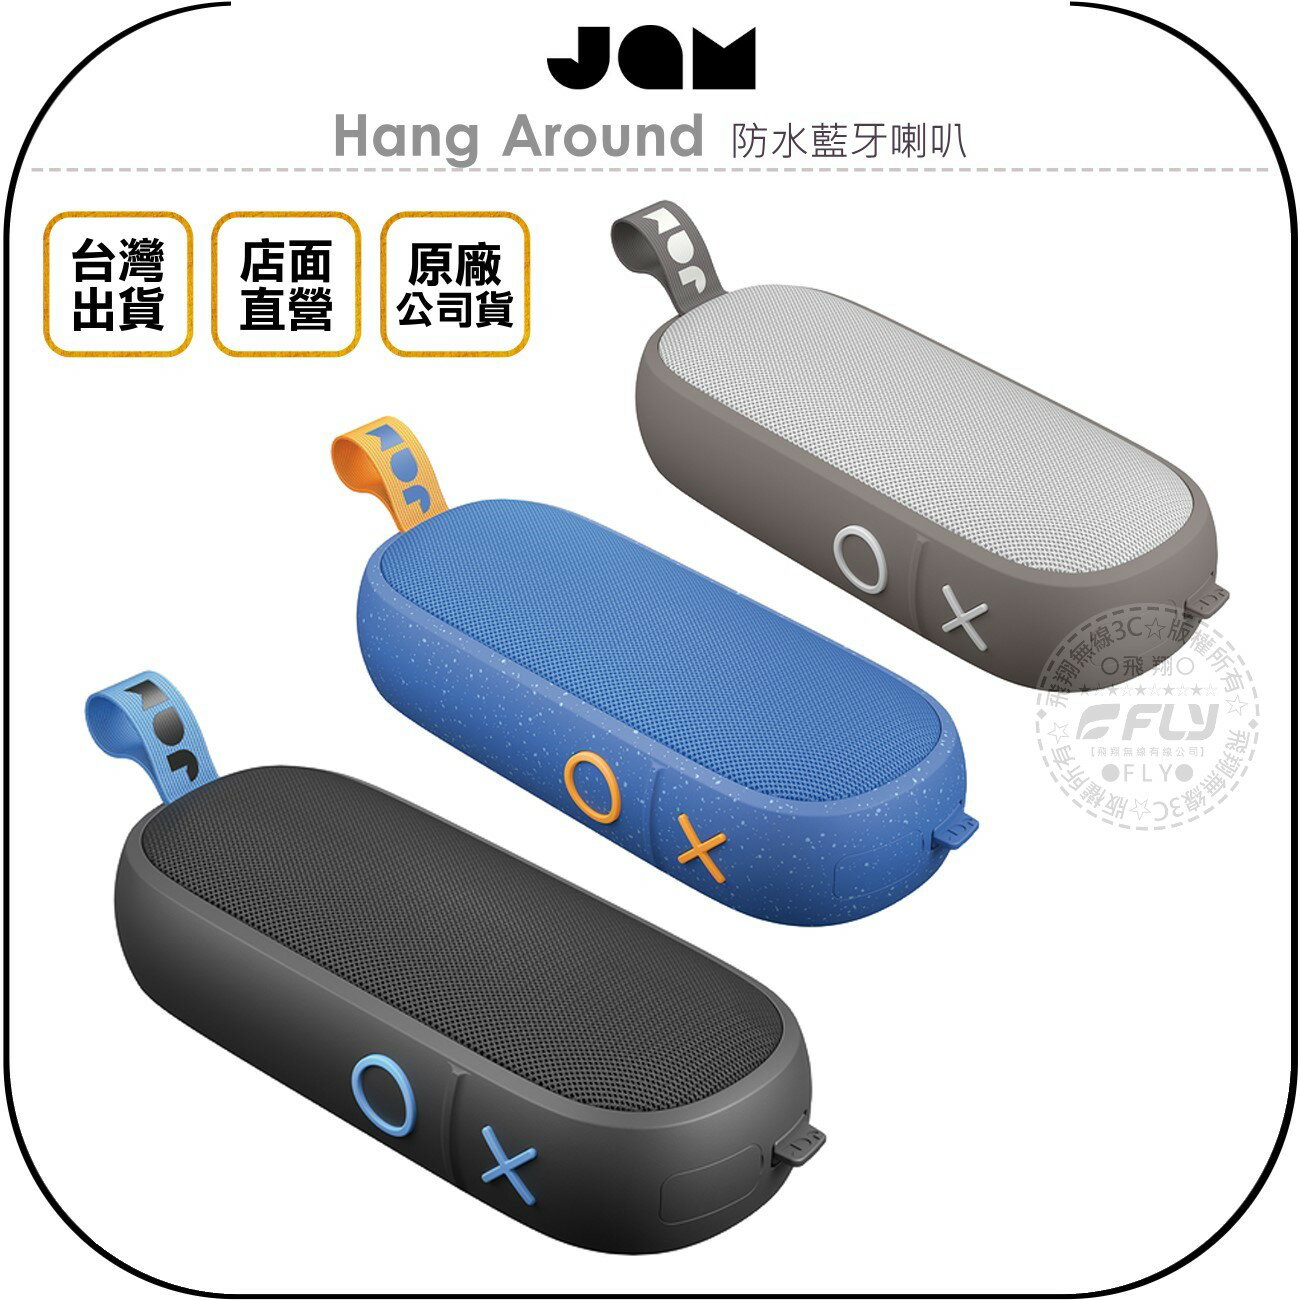 《飛翔無線3C》JAM Hang Around 防水藍牙喇叭◉公司貨◉藍芽音箱◉IP67防水◉長效電力◉免持接聽